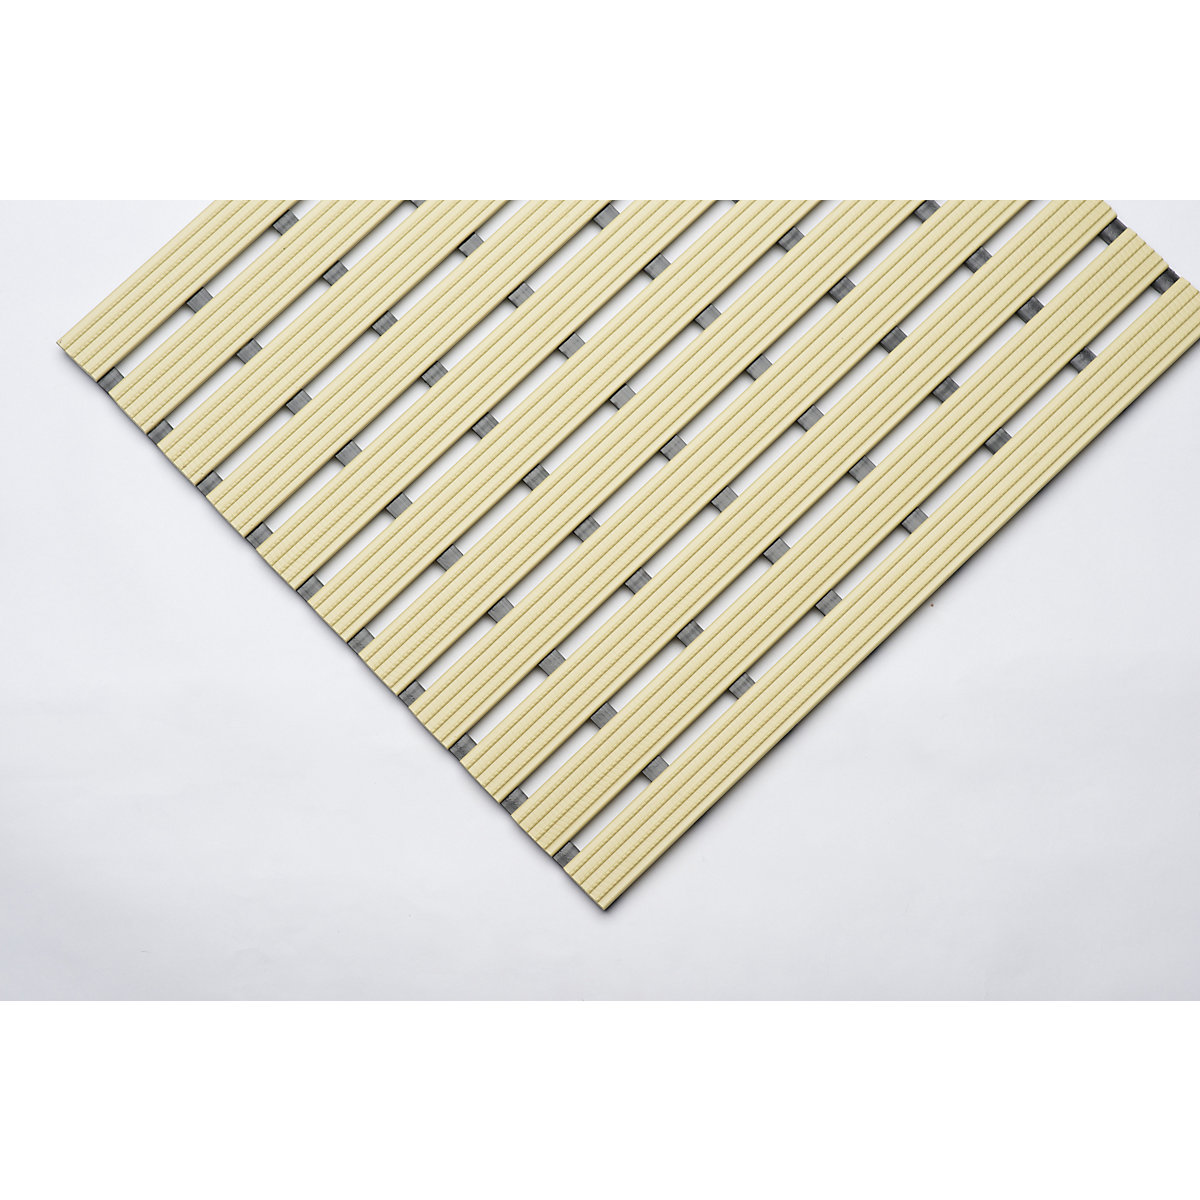 PVC-profilú szőnyeg, folyóméterenként, csúszásmentes futófelület kemény PVC-ből, szélesség 600 mm, bézs-7